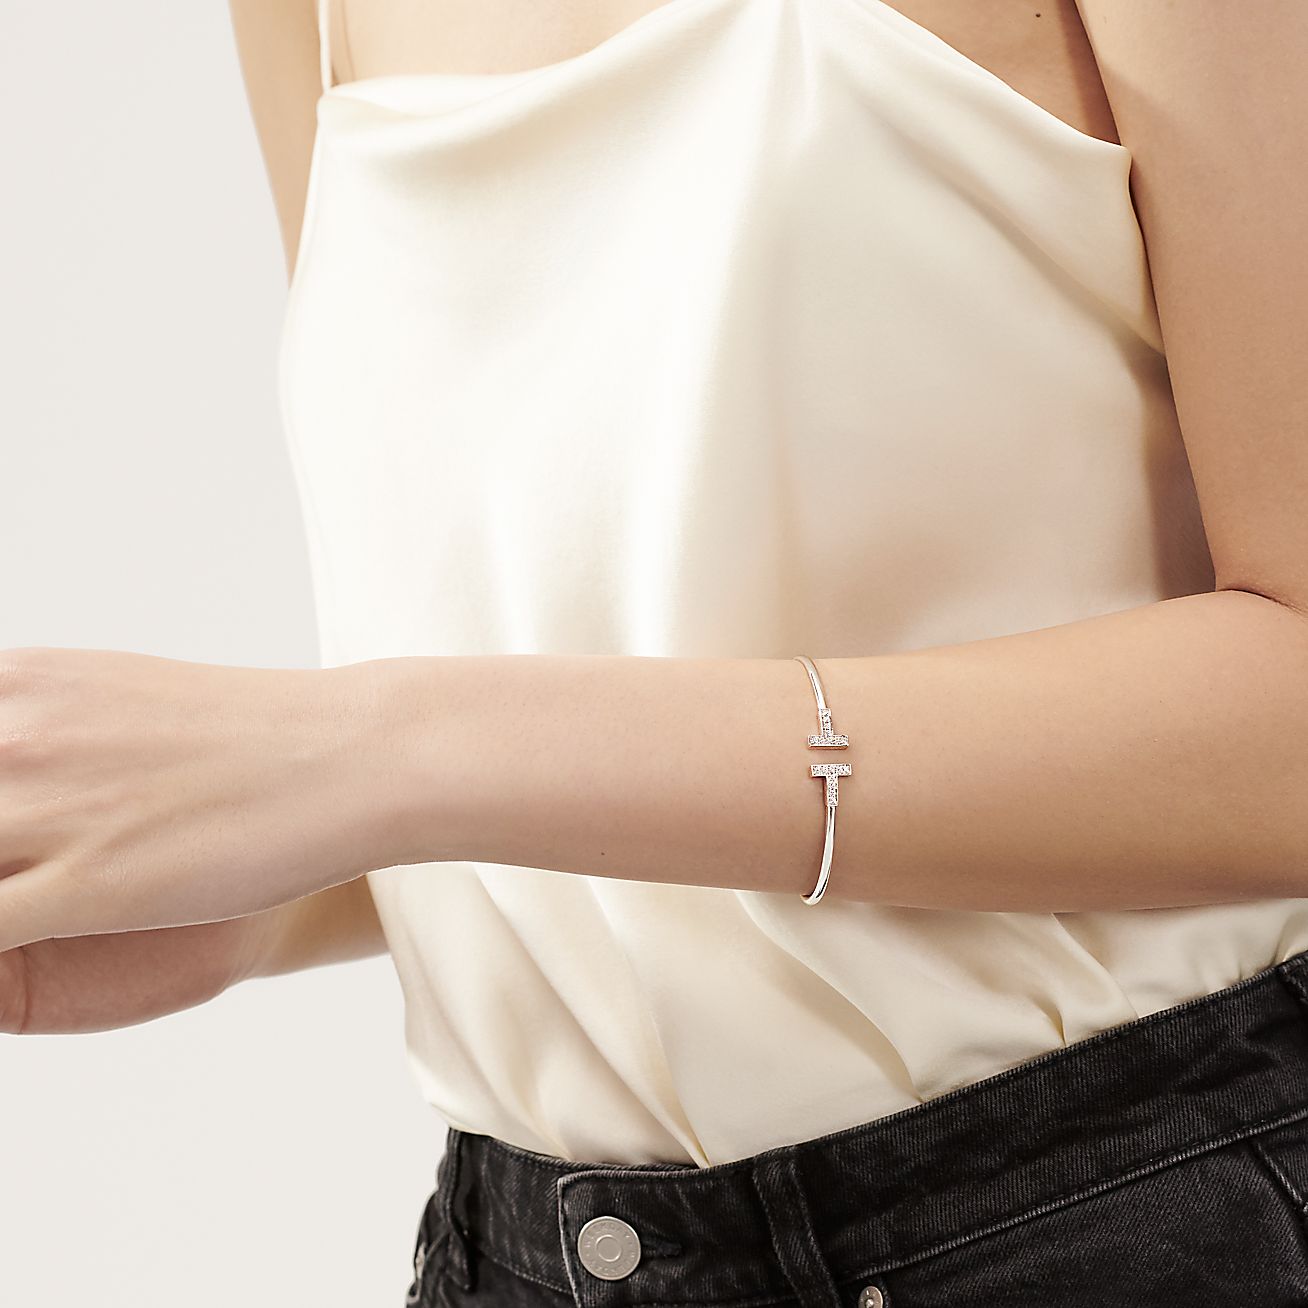 Tiffany & Co. Paper Flower Diamond Bracelet in 18k White Gold 0.17